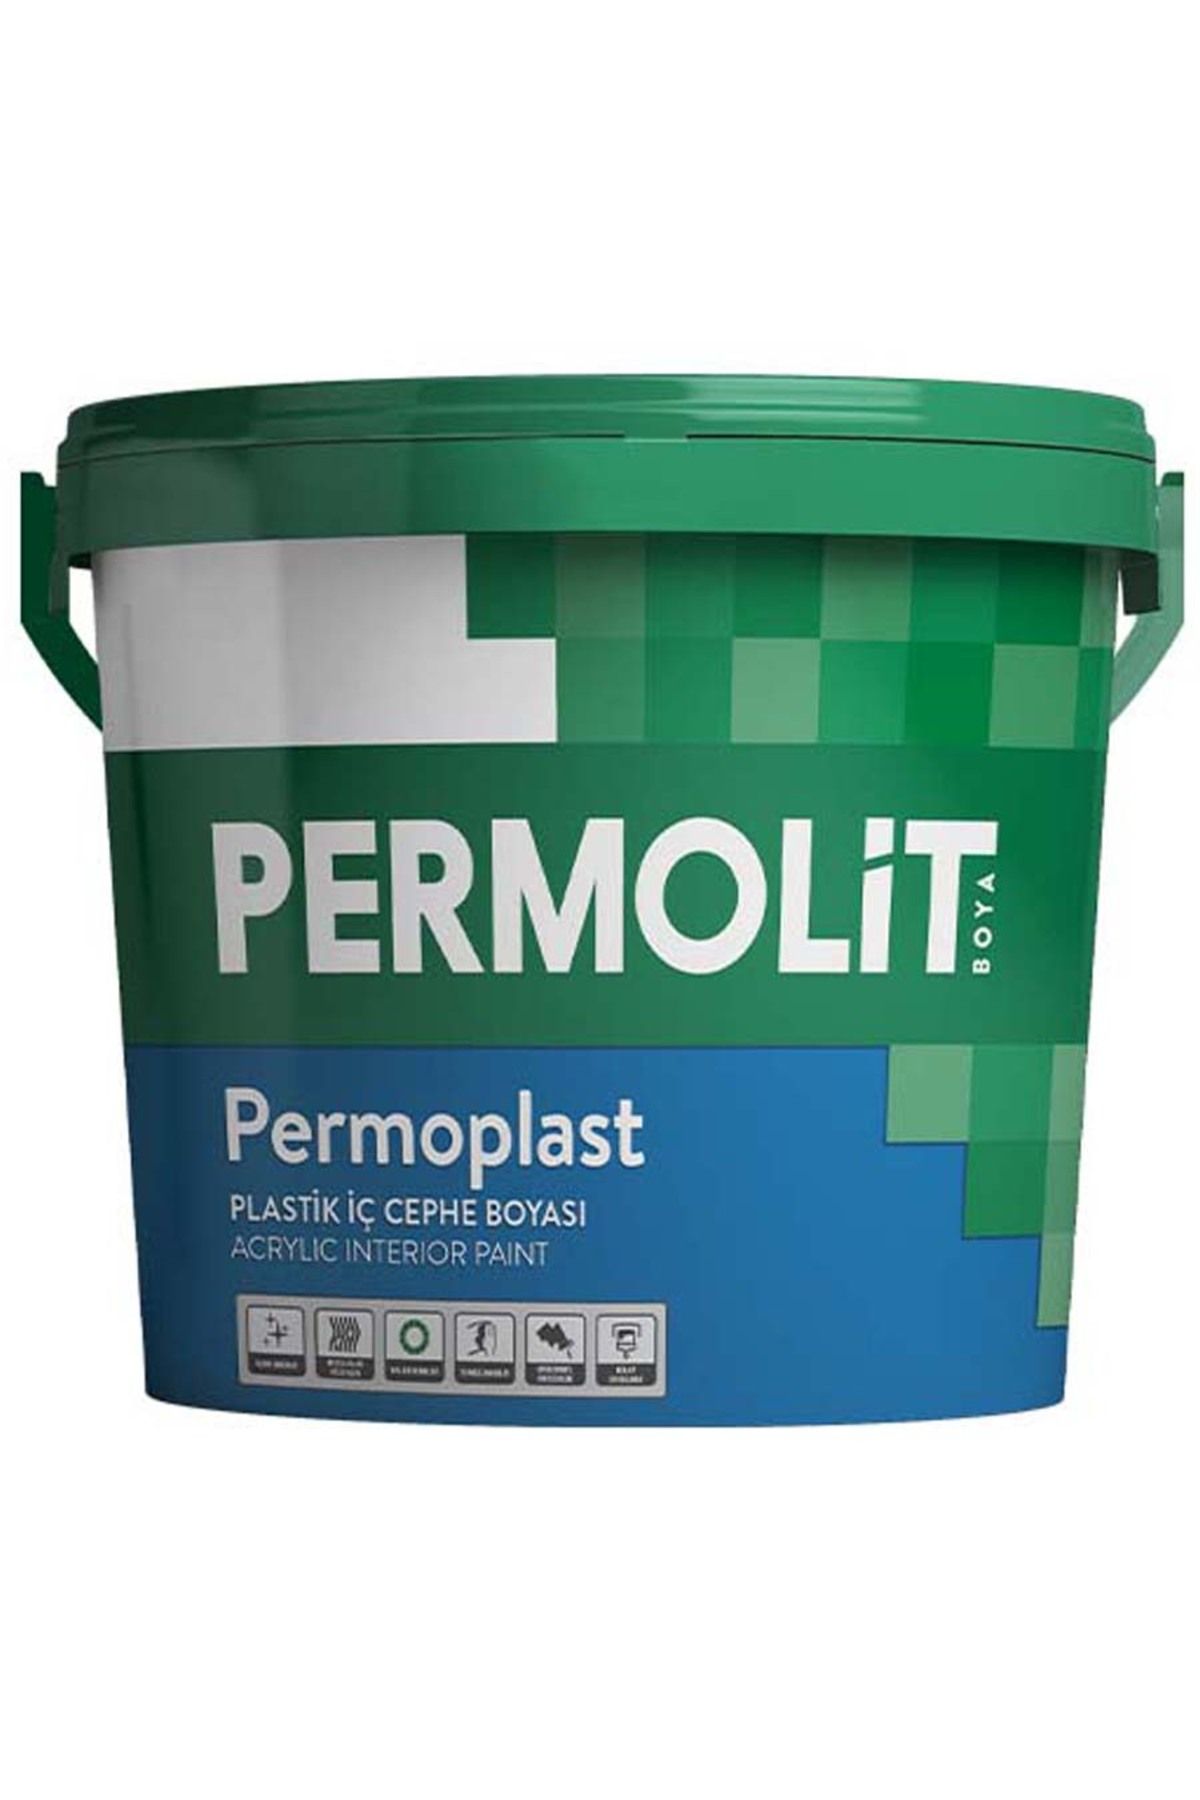 Permolit Permoplast Plastik İç Cephe Boyası